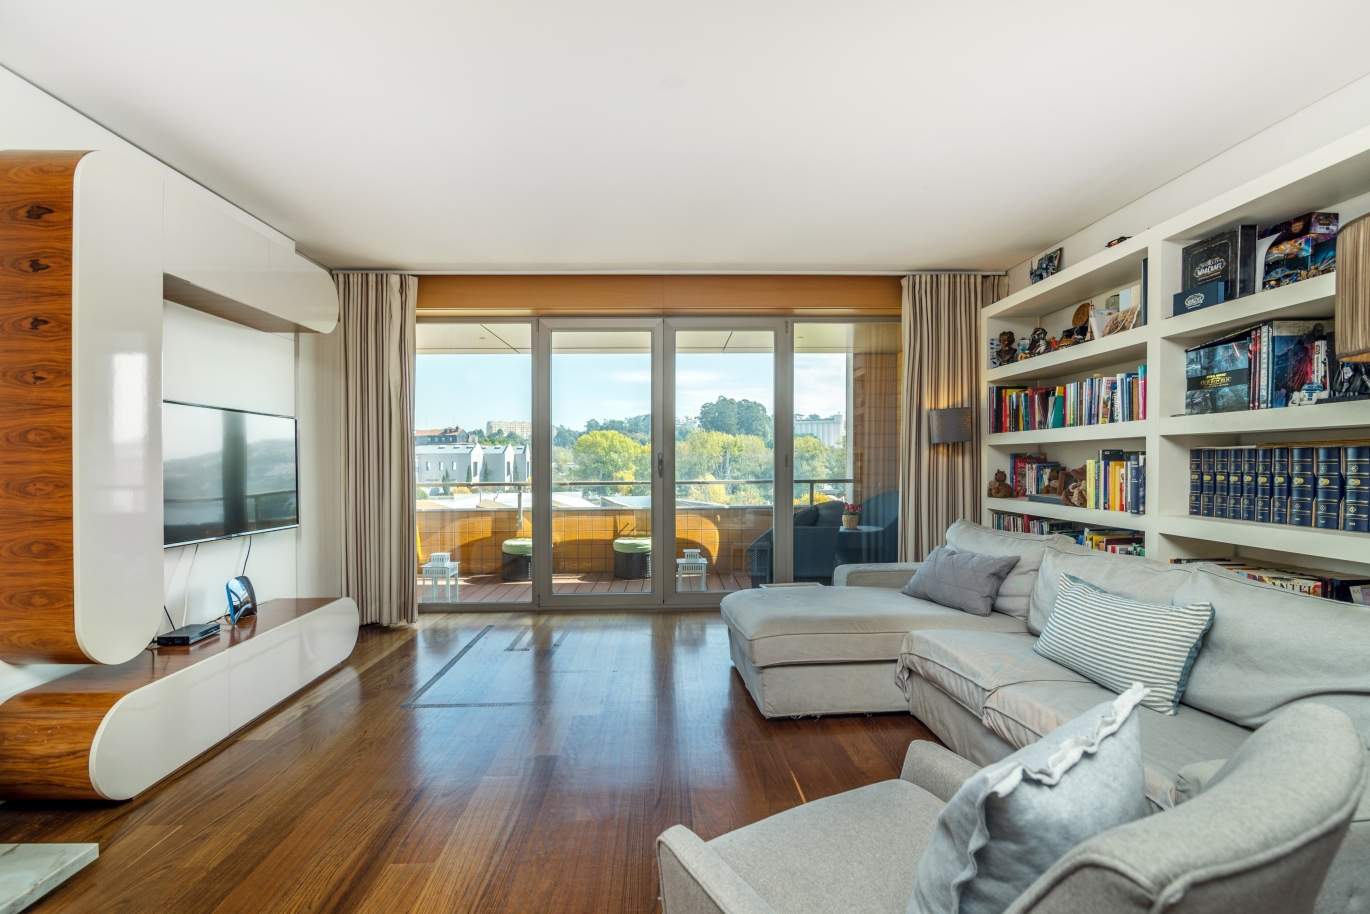 Venta apartamento en condominio privado con vistas río, Porto,Portugal_121030